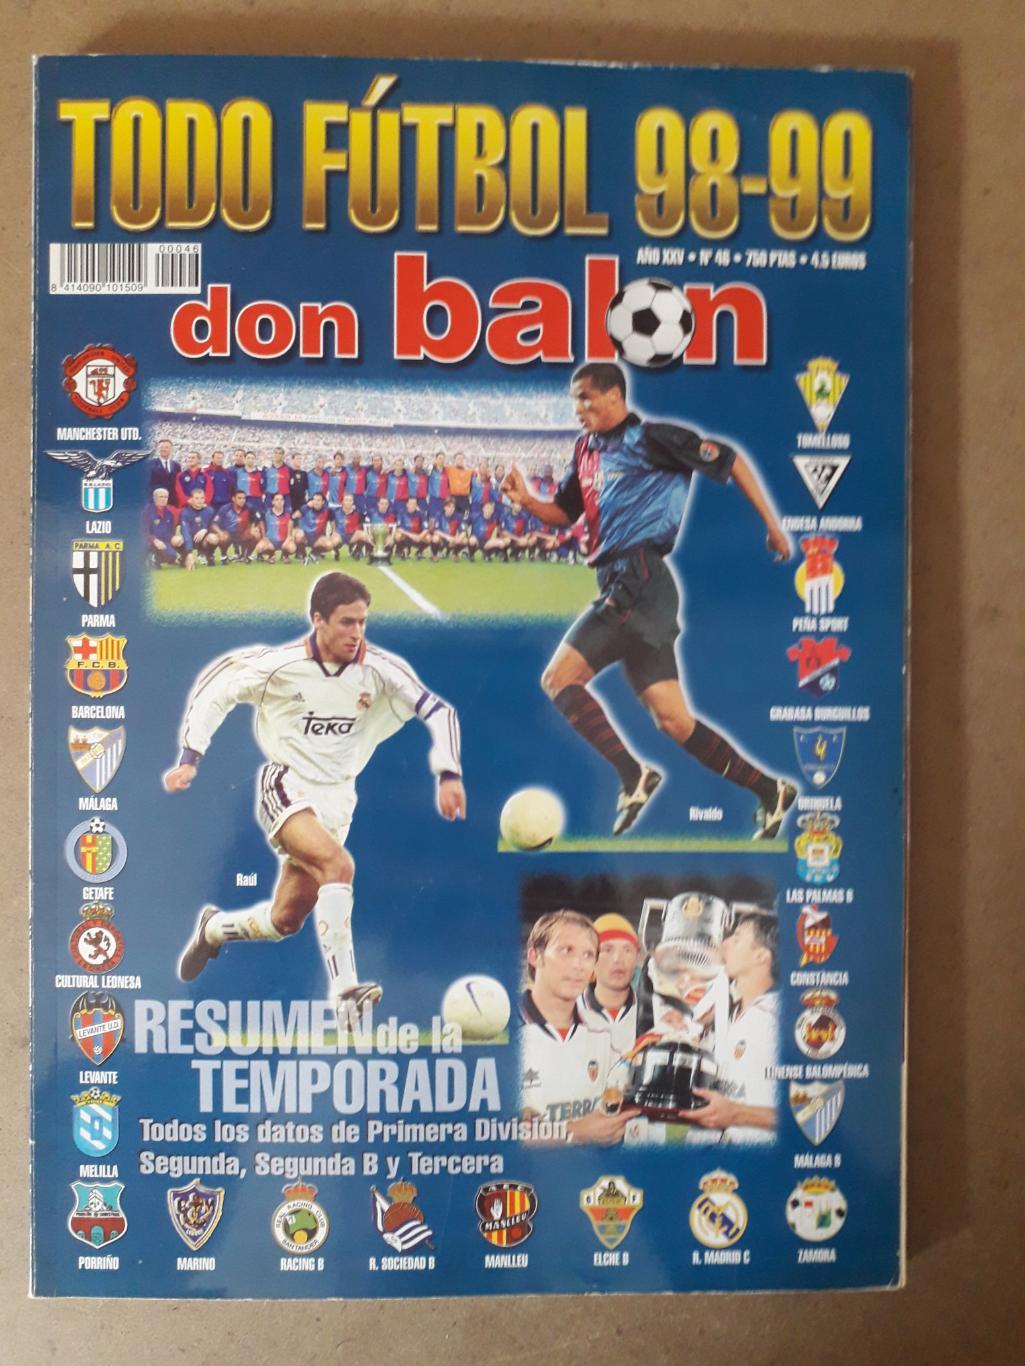 Don Balon todo futbol 1998/99